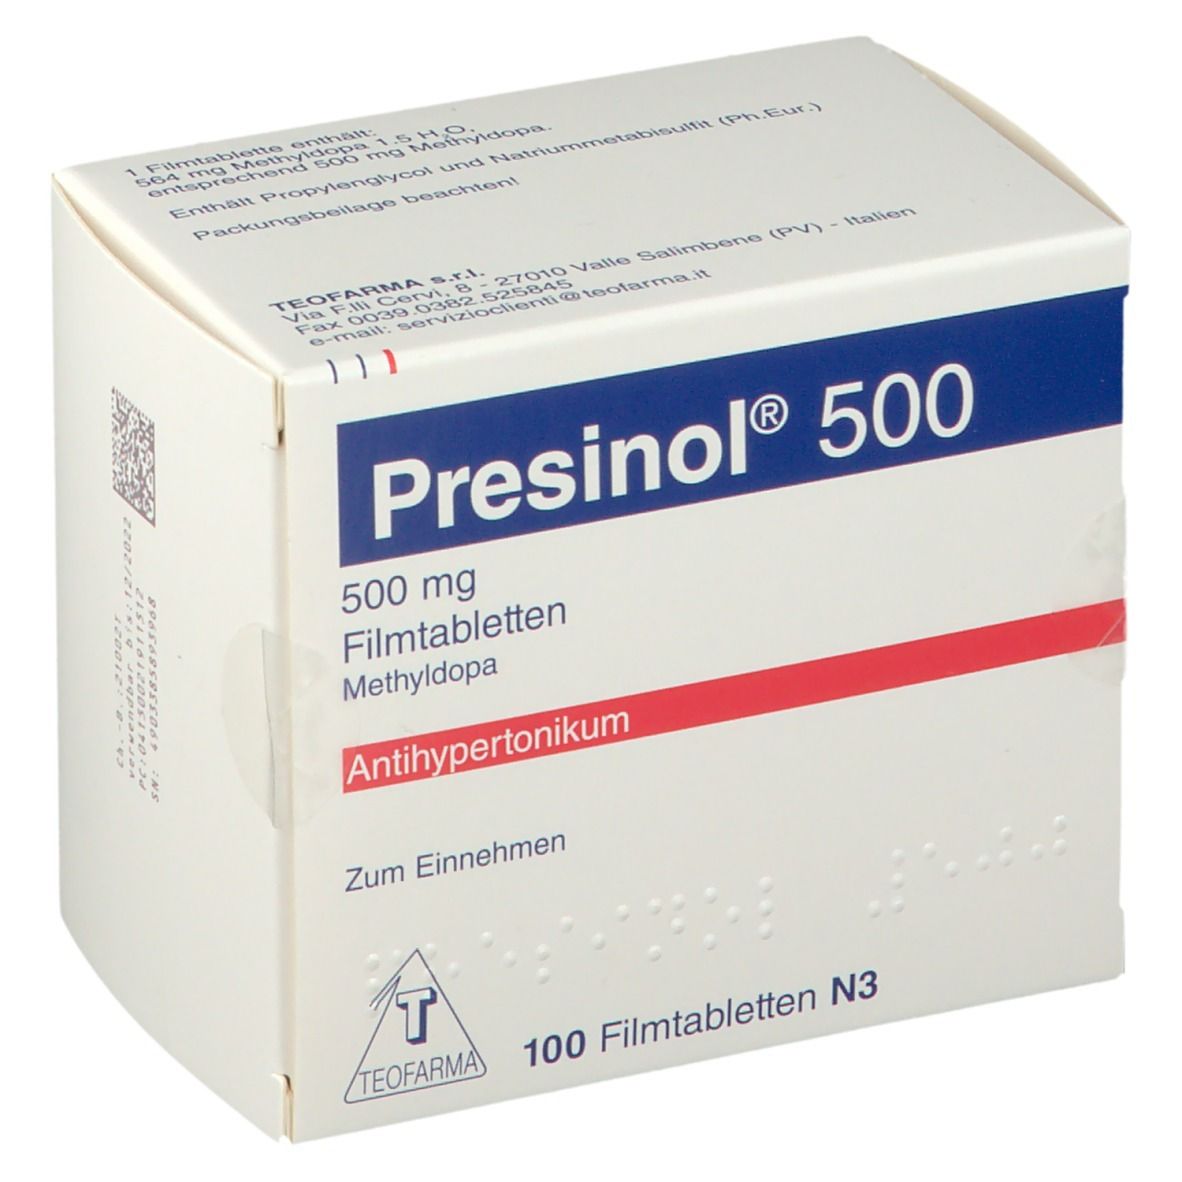 Presinol® 500